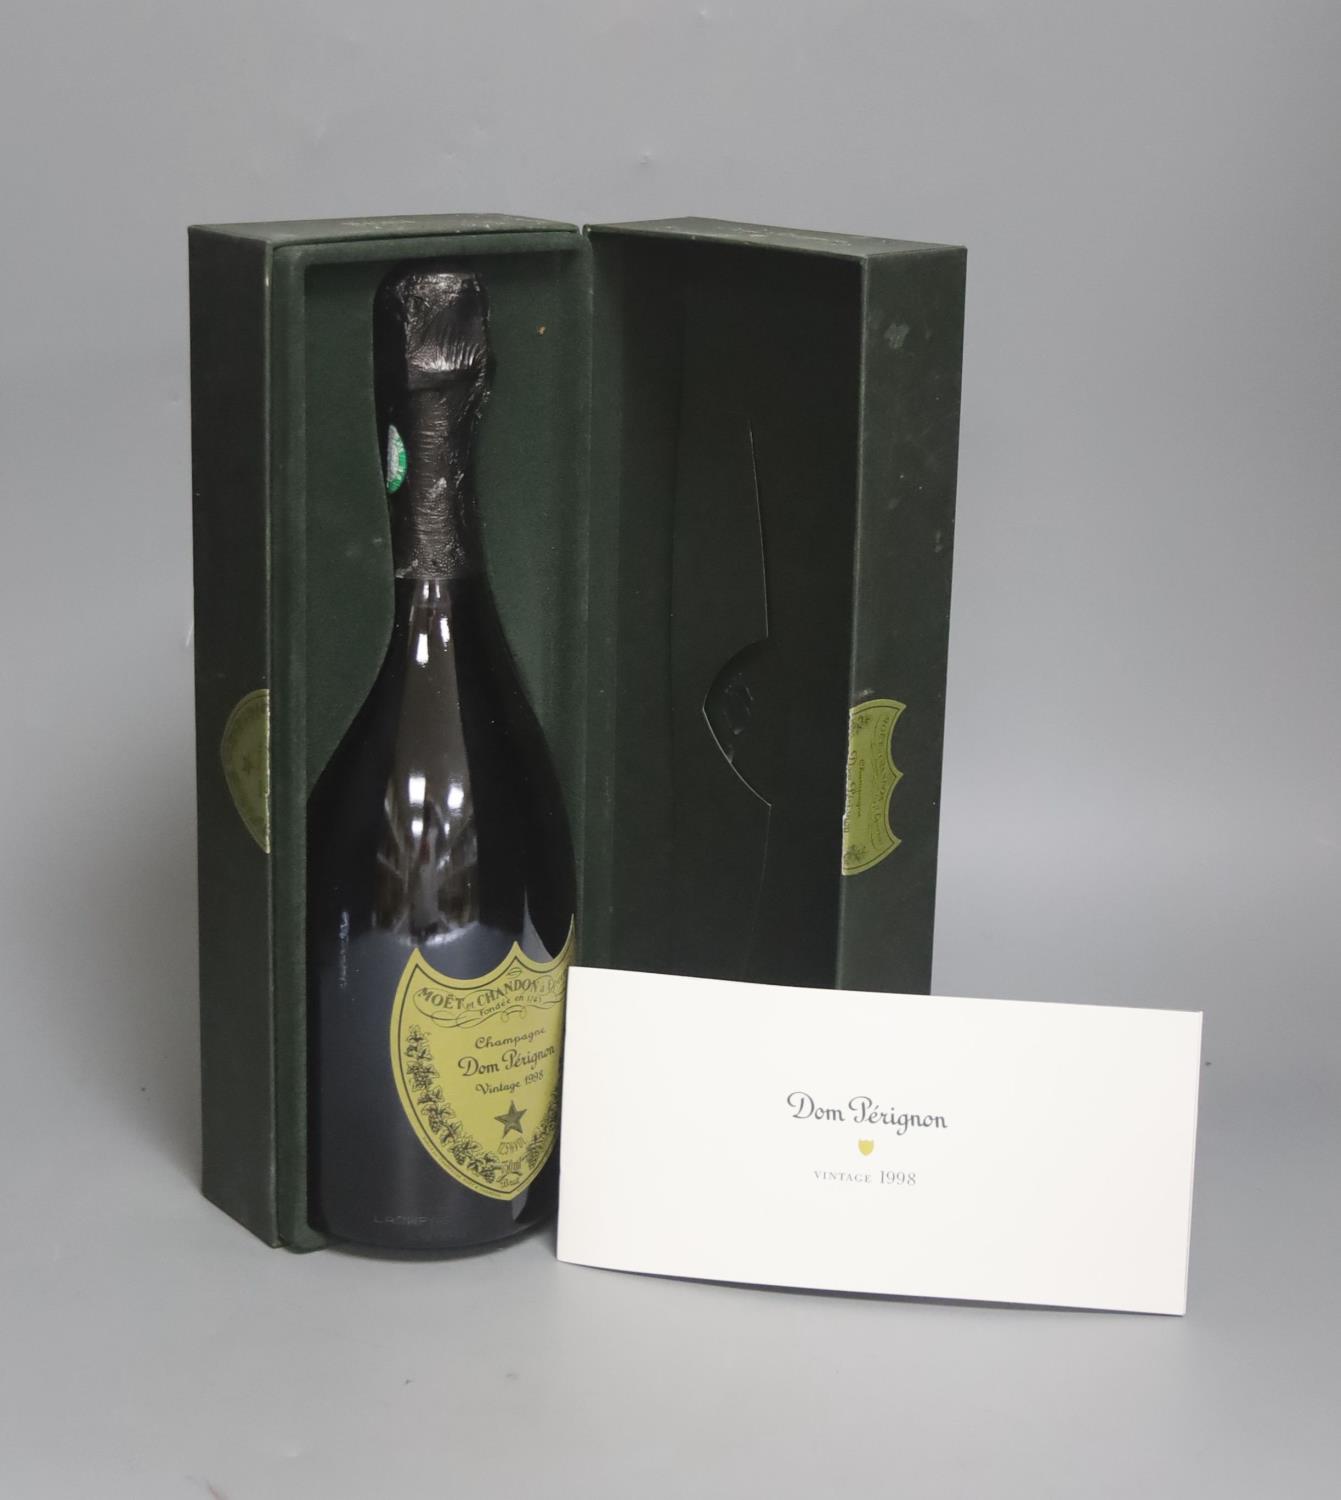 Boxed Dom Perignon vintage 1998, one bottle